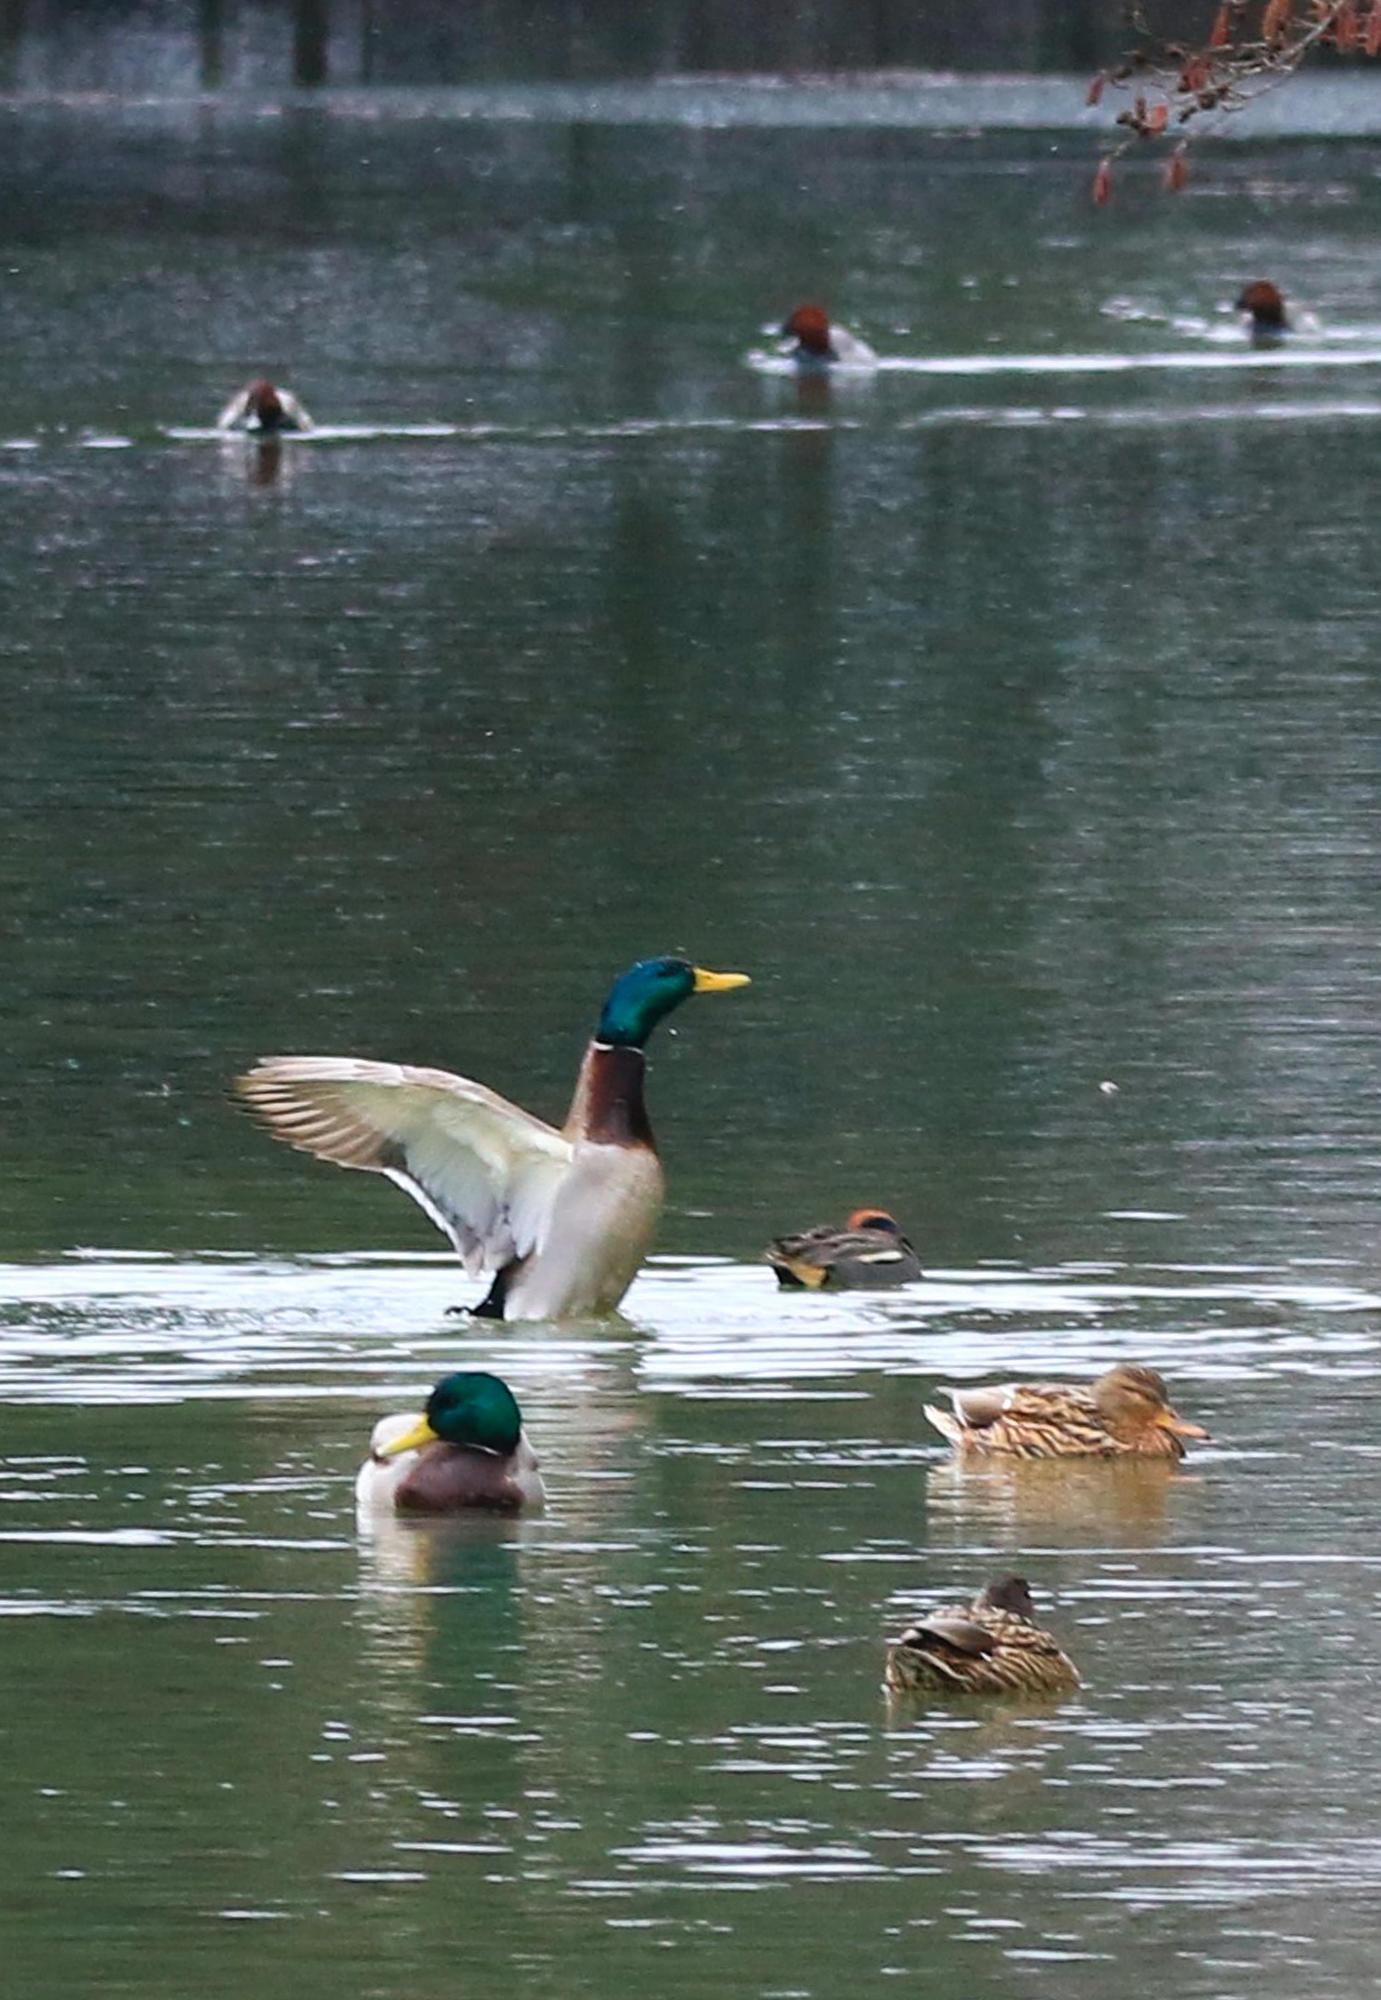 8羽の鴨が水面に浮かんでおり、そのうちの1羽が飛び立とうとしている写真